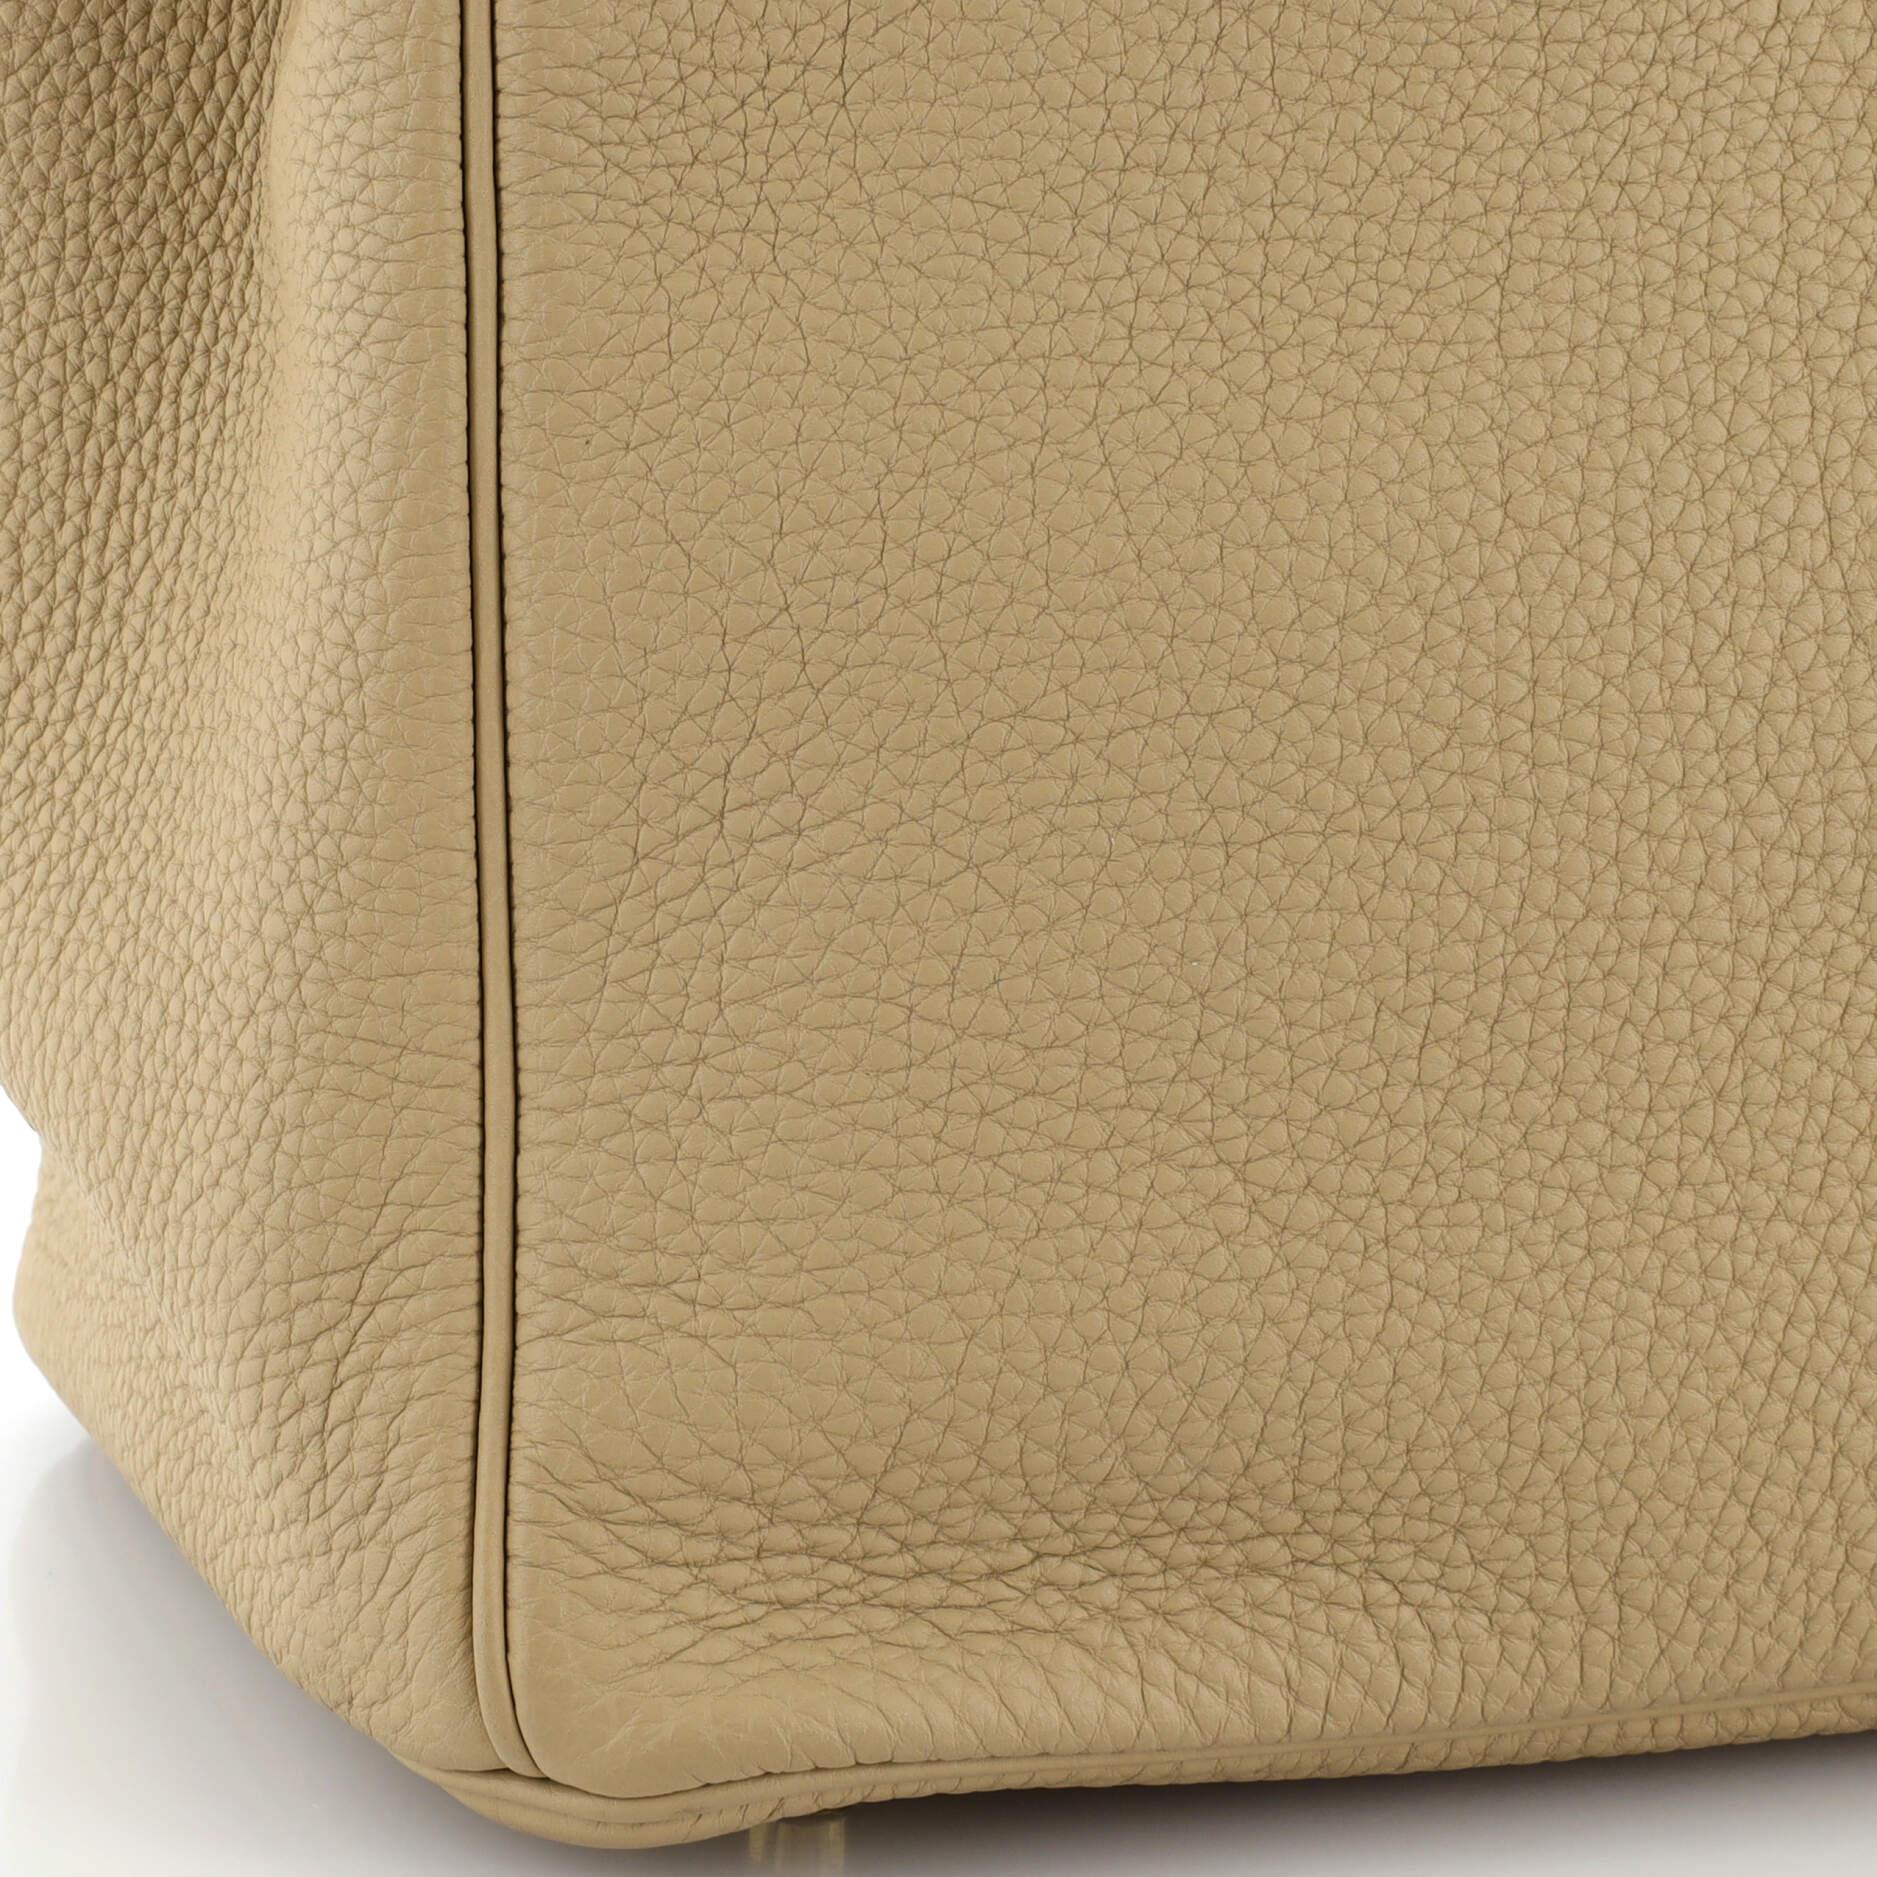 Hermes Birkin Handbag Light Togo with Gold Hardware 30 For Sale 3